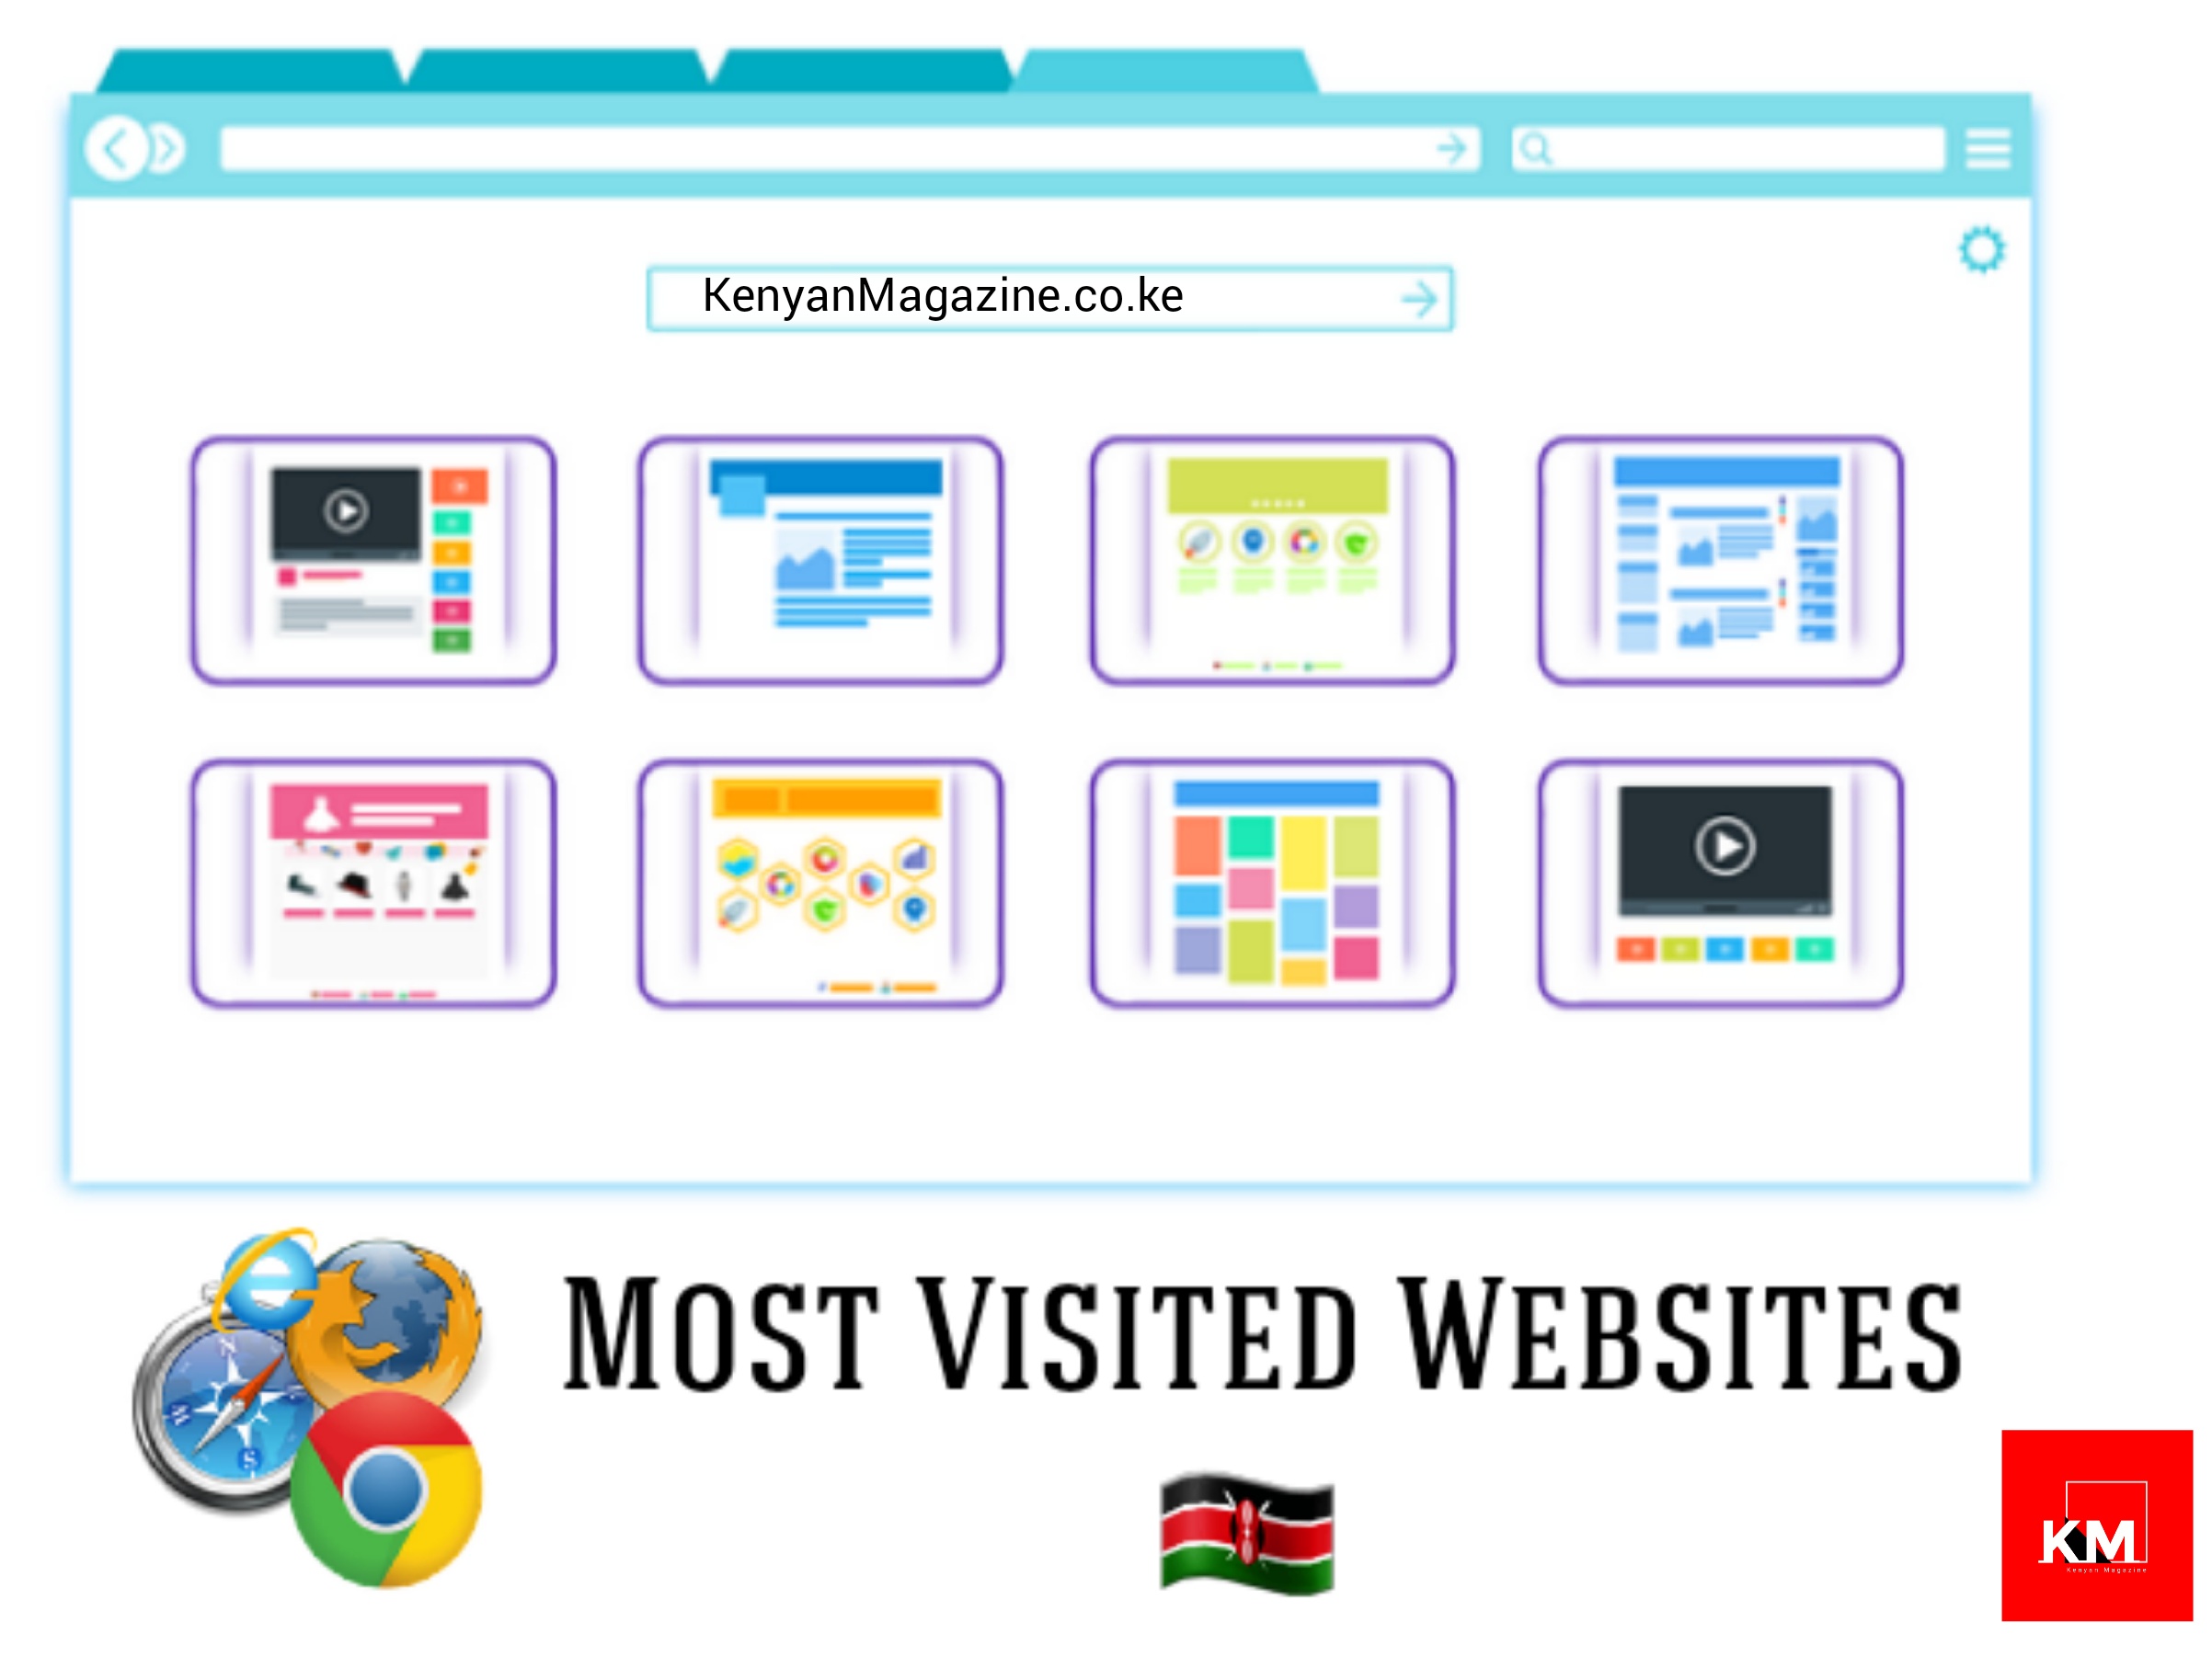 Most visited websites in kenya